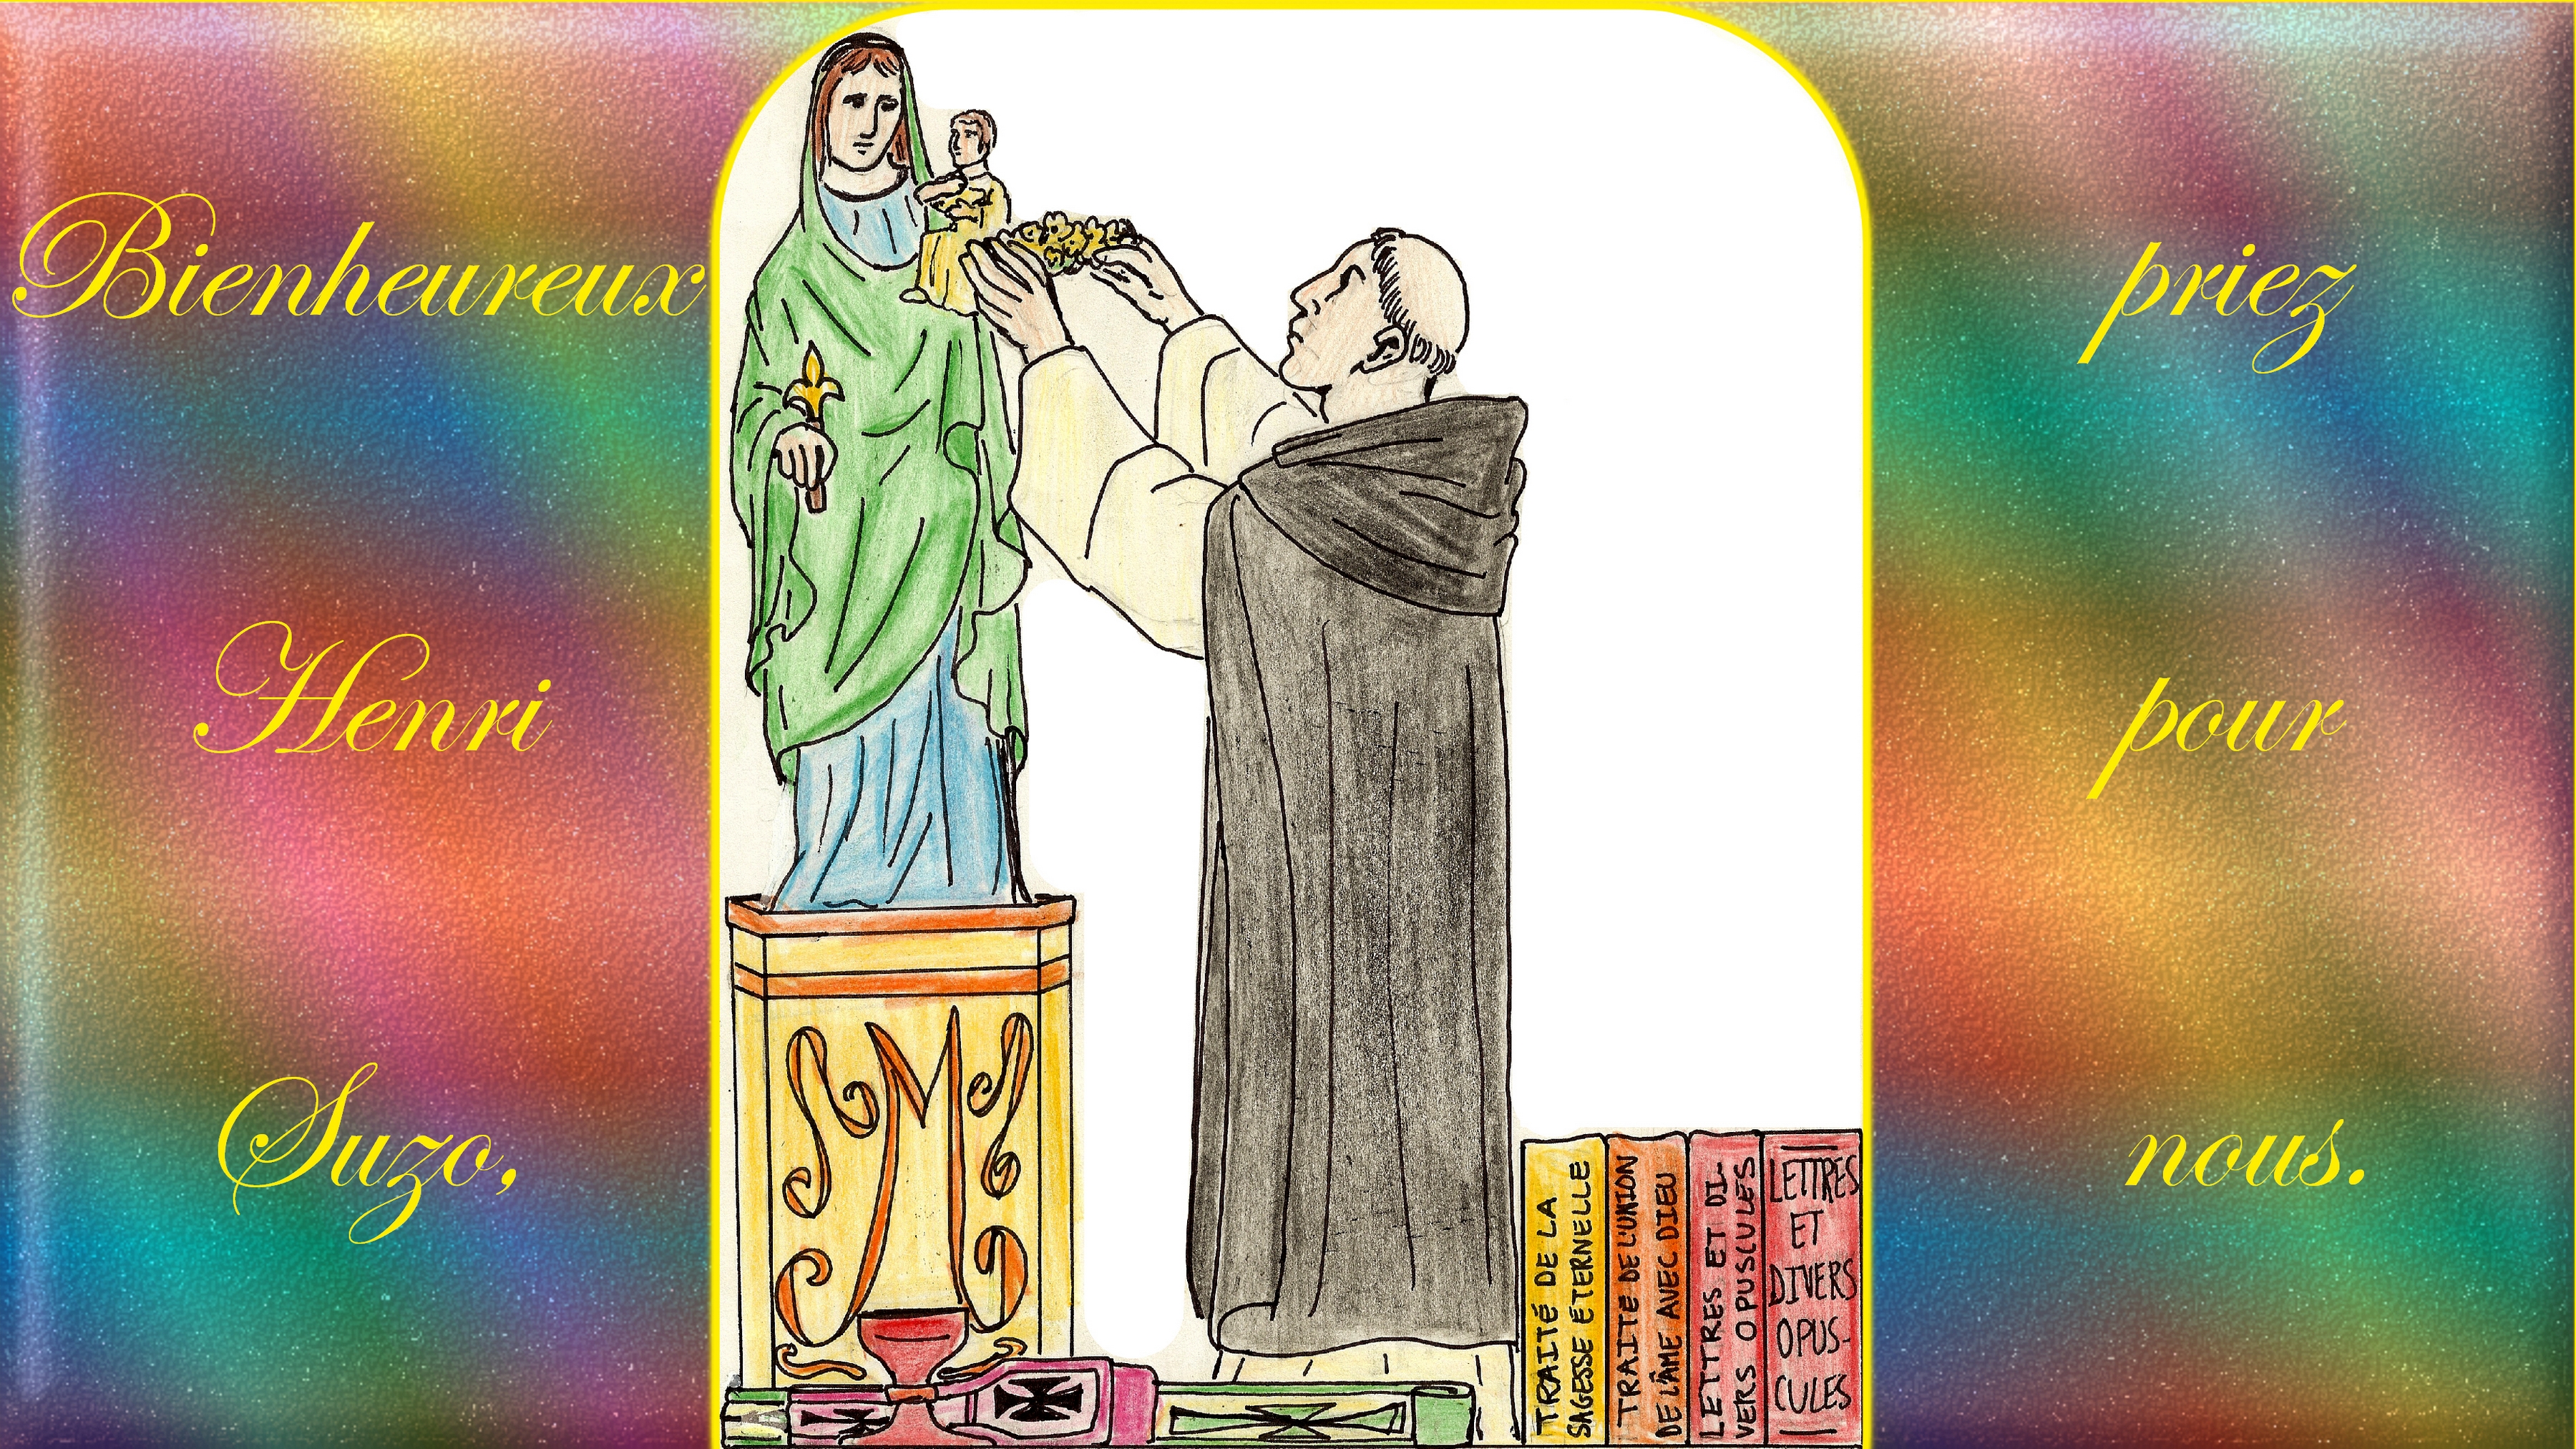 CALENDRIER CATHOLIQUE 2020 (Cantiques, Prières & Images) - Page 7 Bx-henri-suzo-57199d8